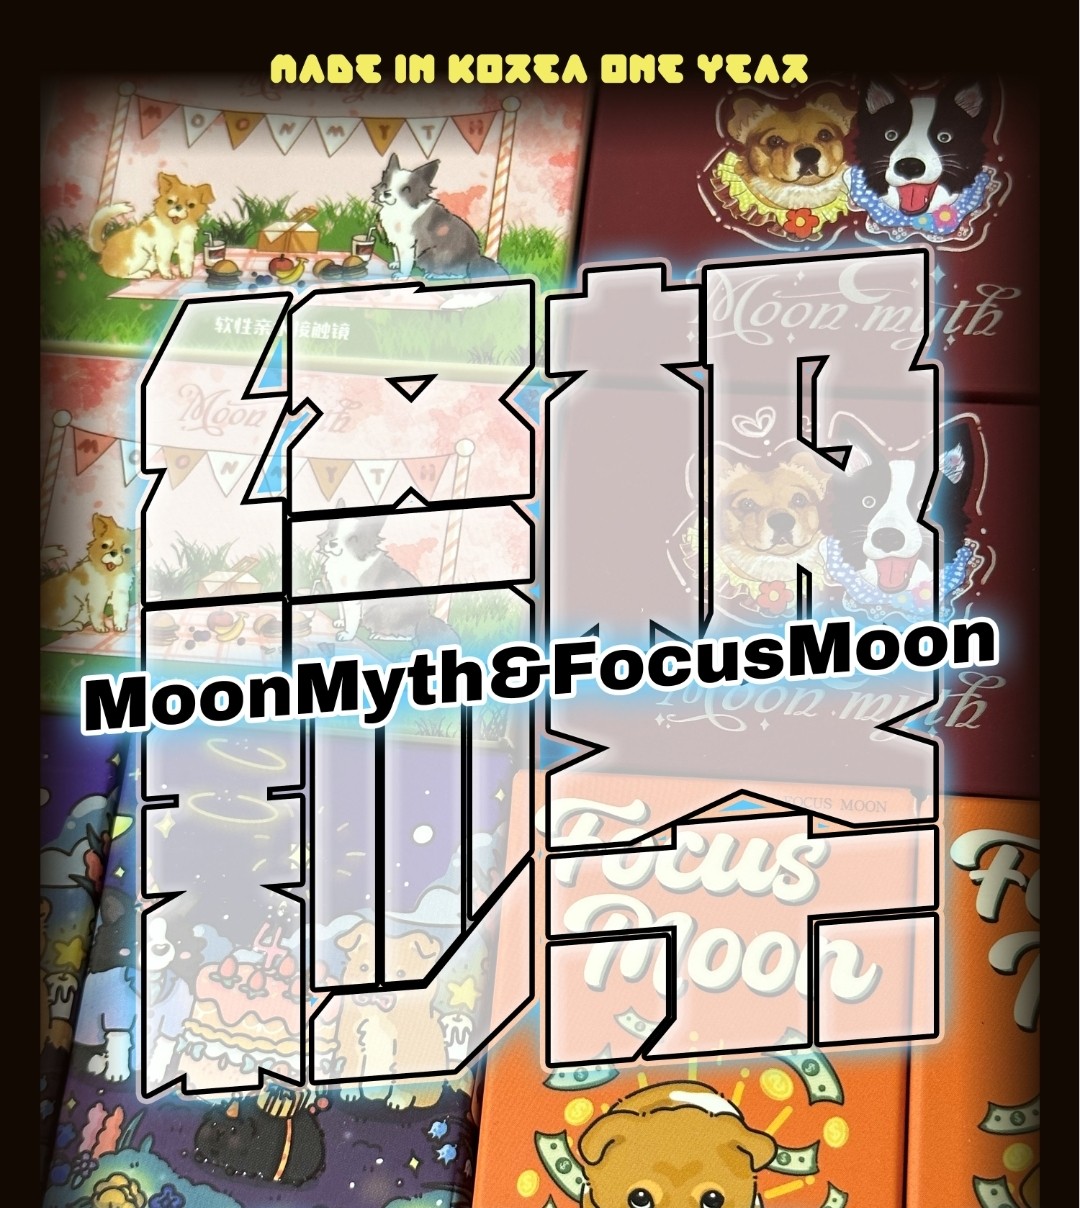 【年抛秒杀】MoonMyth·FocusMoon 韩产进口年抛 忍痛割爱限时秒杀